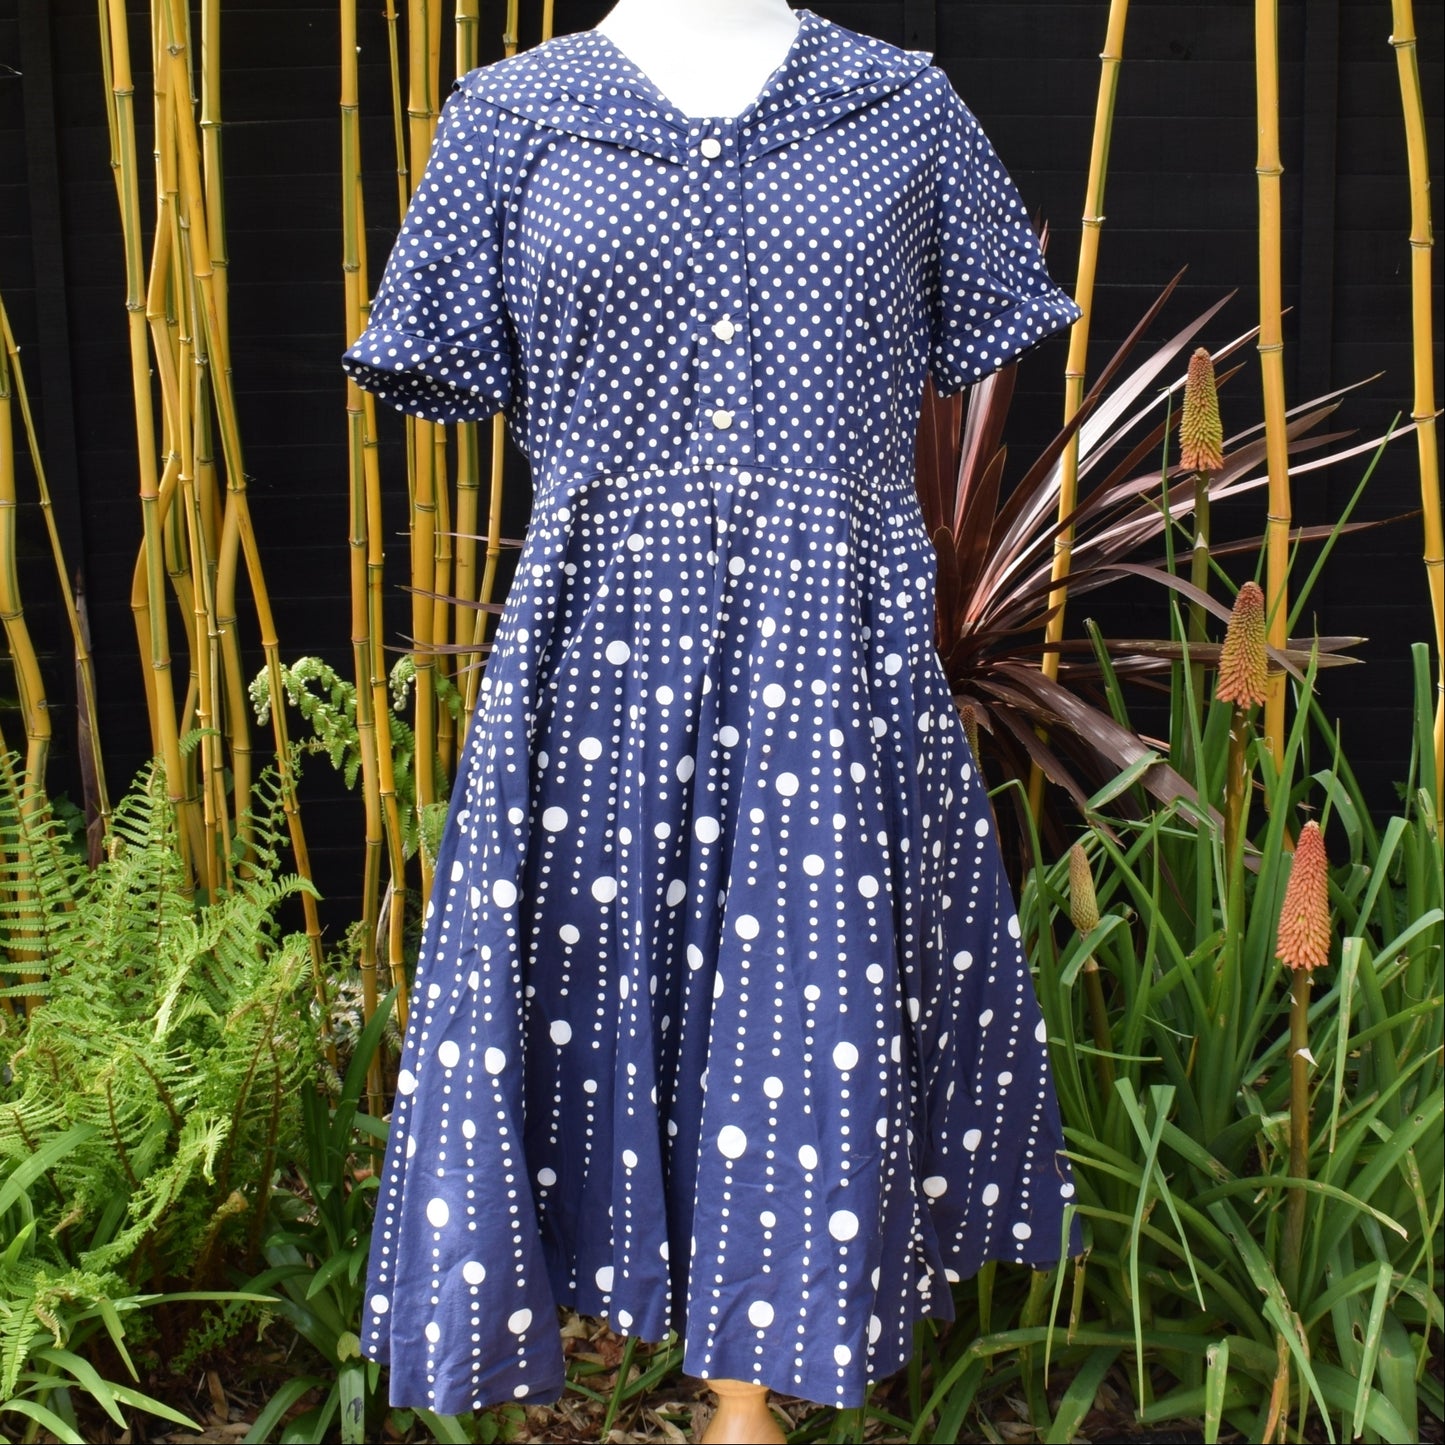 Vintage 1950s Dress - Navy Spots -  Size 14